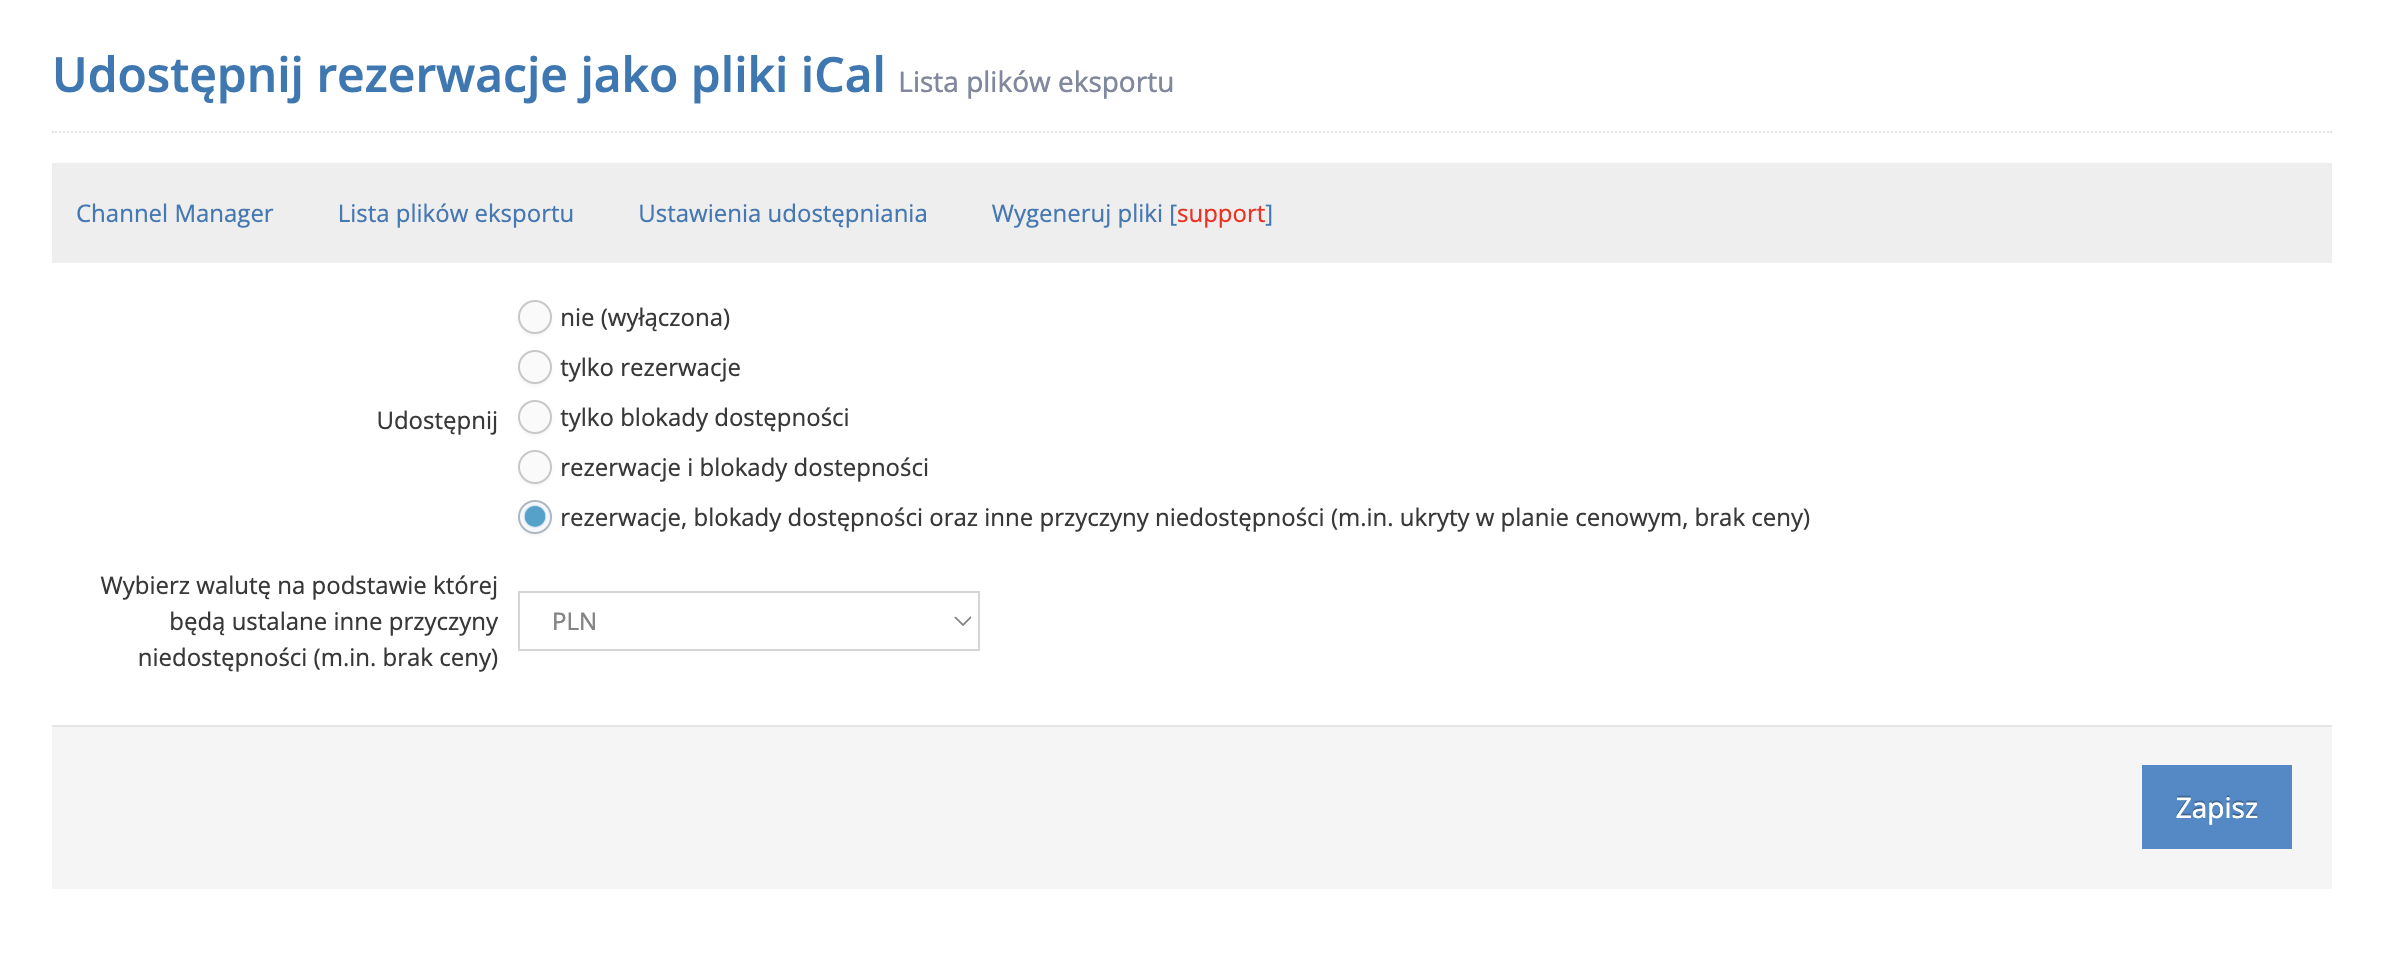 Slowhop - udostępnij rezerwacje jako pliki iCal - Jak udostępnić rezerwacje jako pliki iCal